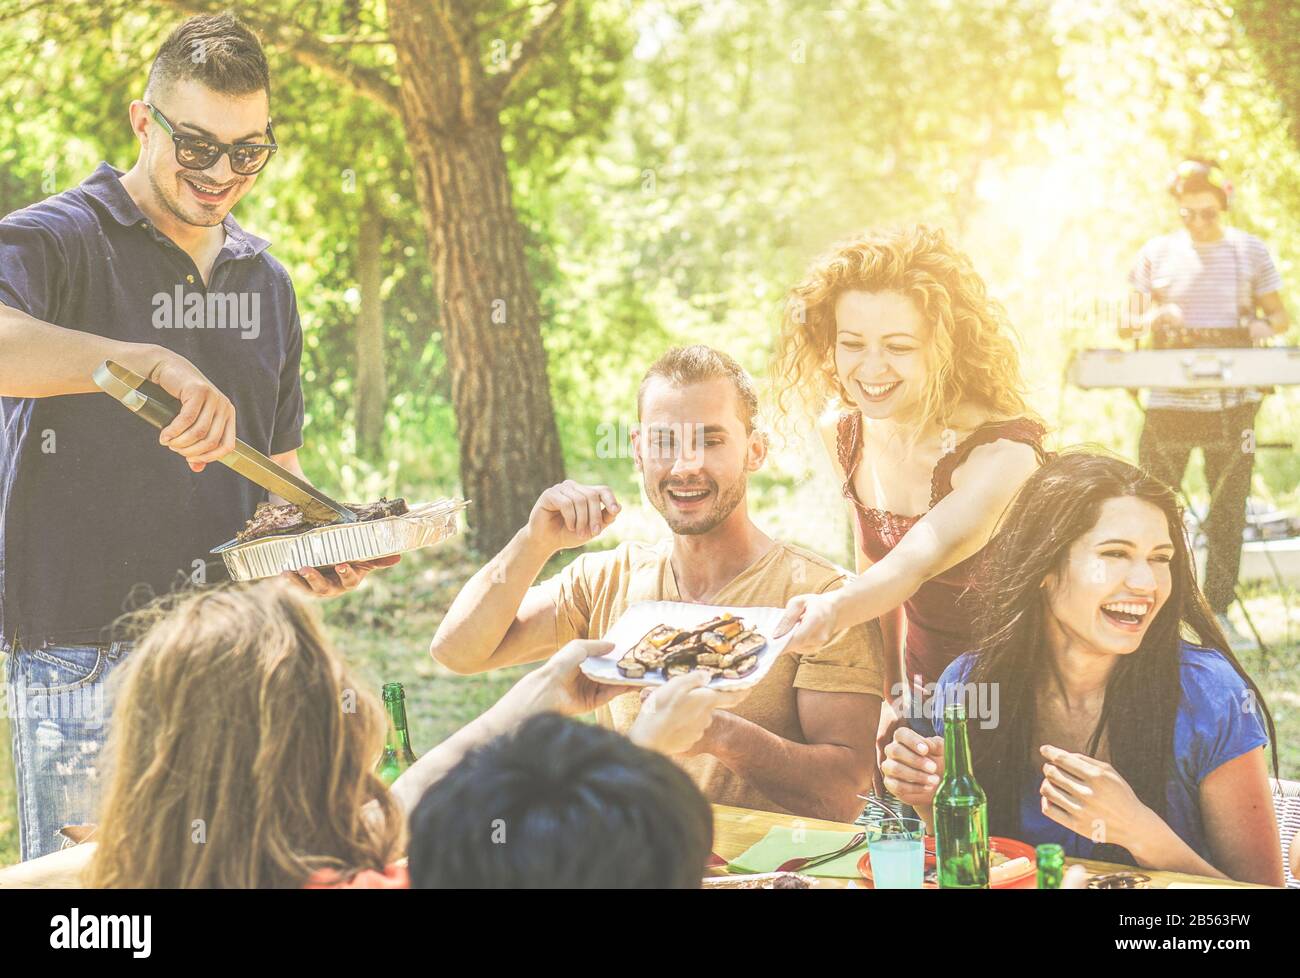 Fröhliche Freunde haben Spaß auf der Grillparty Bier trinken, essen, Musik hören - Junge Leute genießen bbq-Abendessen im Freien - Freundschaft und Sommer c Stockfoto